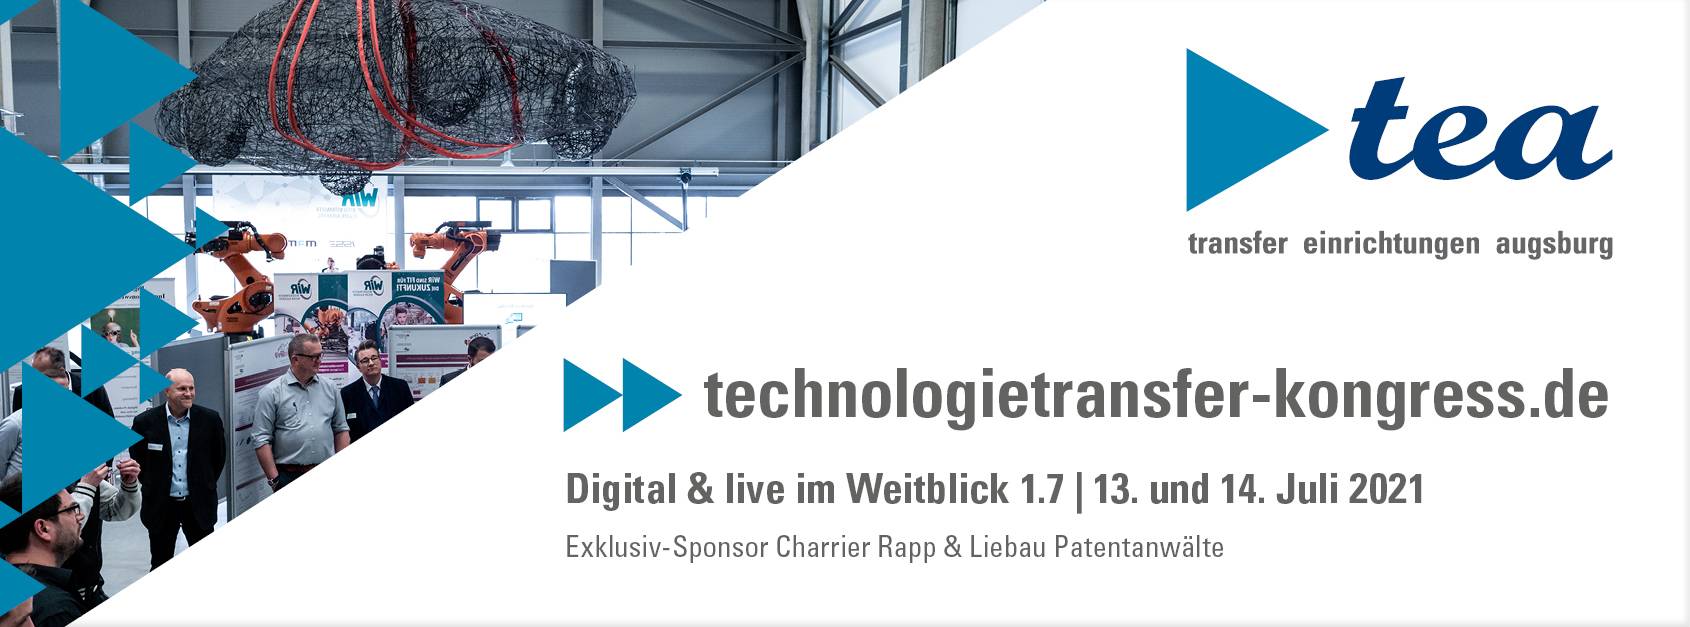 technologietransfer-kongress.de / 13. und 14. Juli 2021